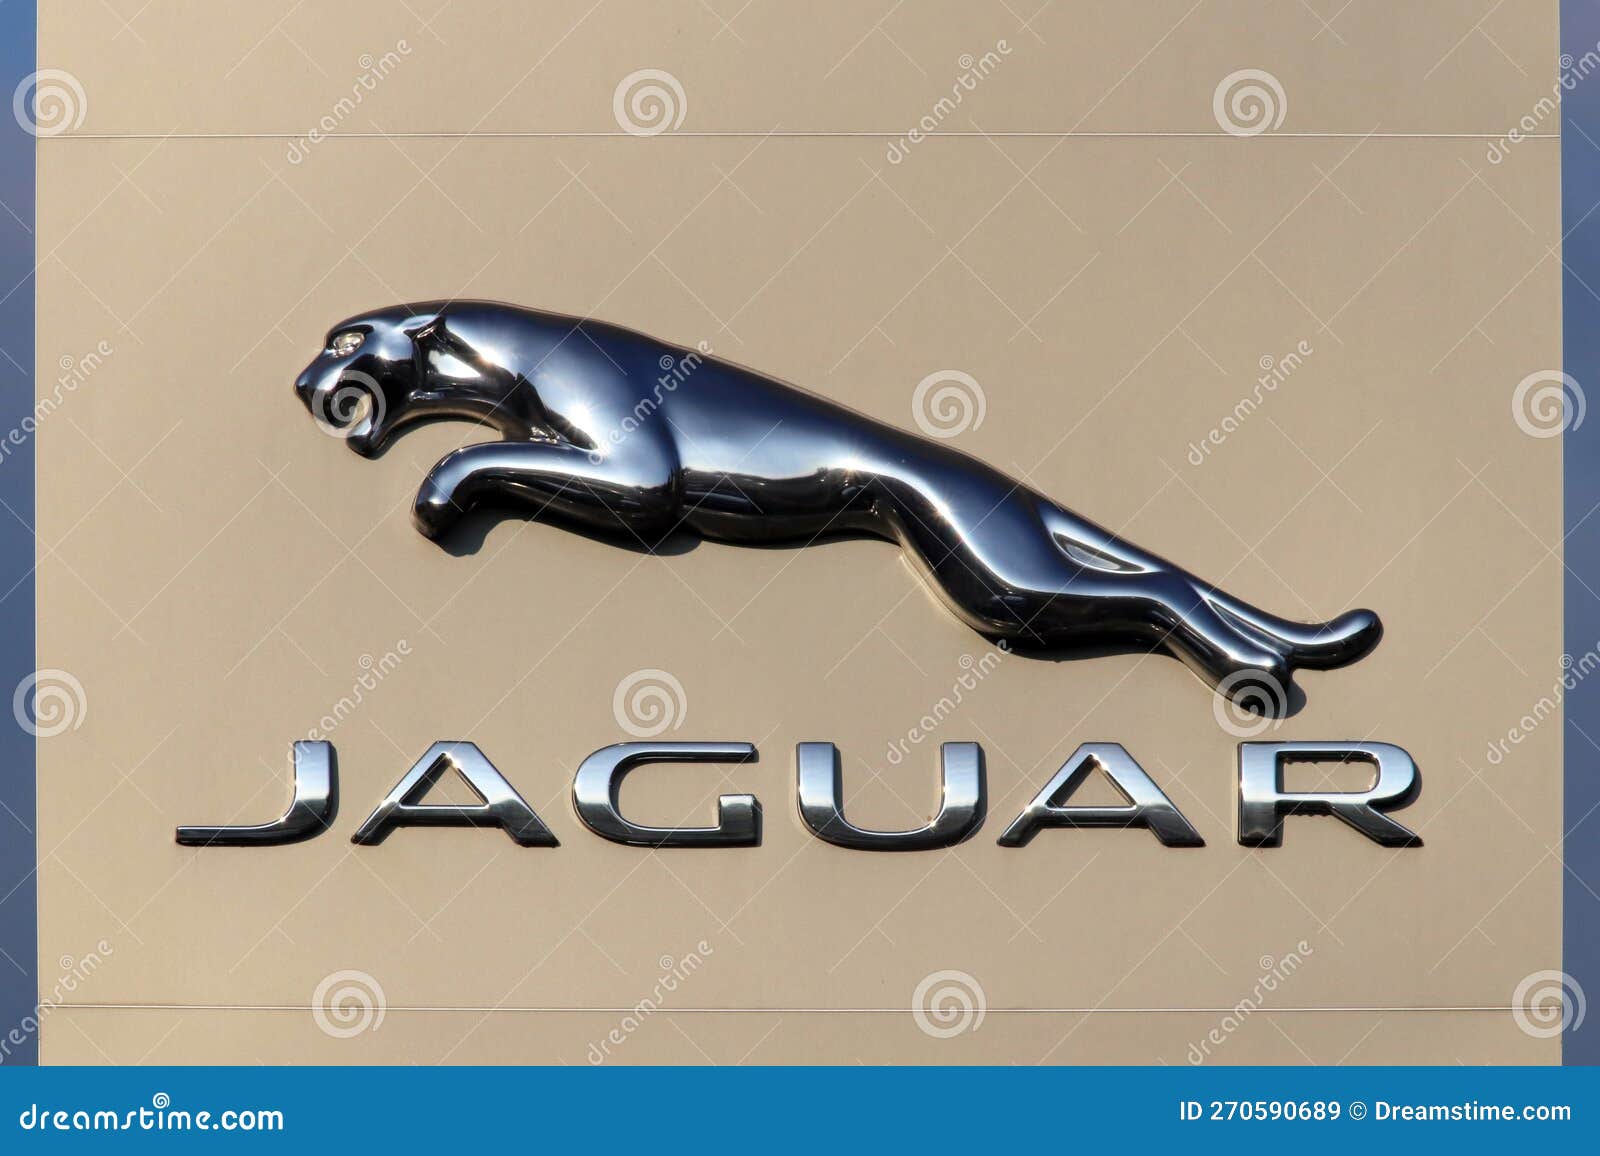 signo-de-marca-jaguar-en-un-concesionario-coches-s%C3%ADmbolo-italia-a%C3%B1o-270590689.jpg